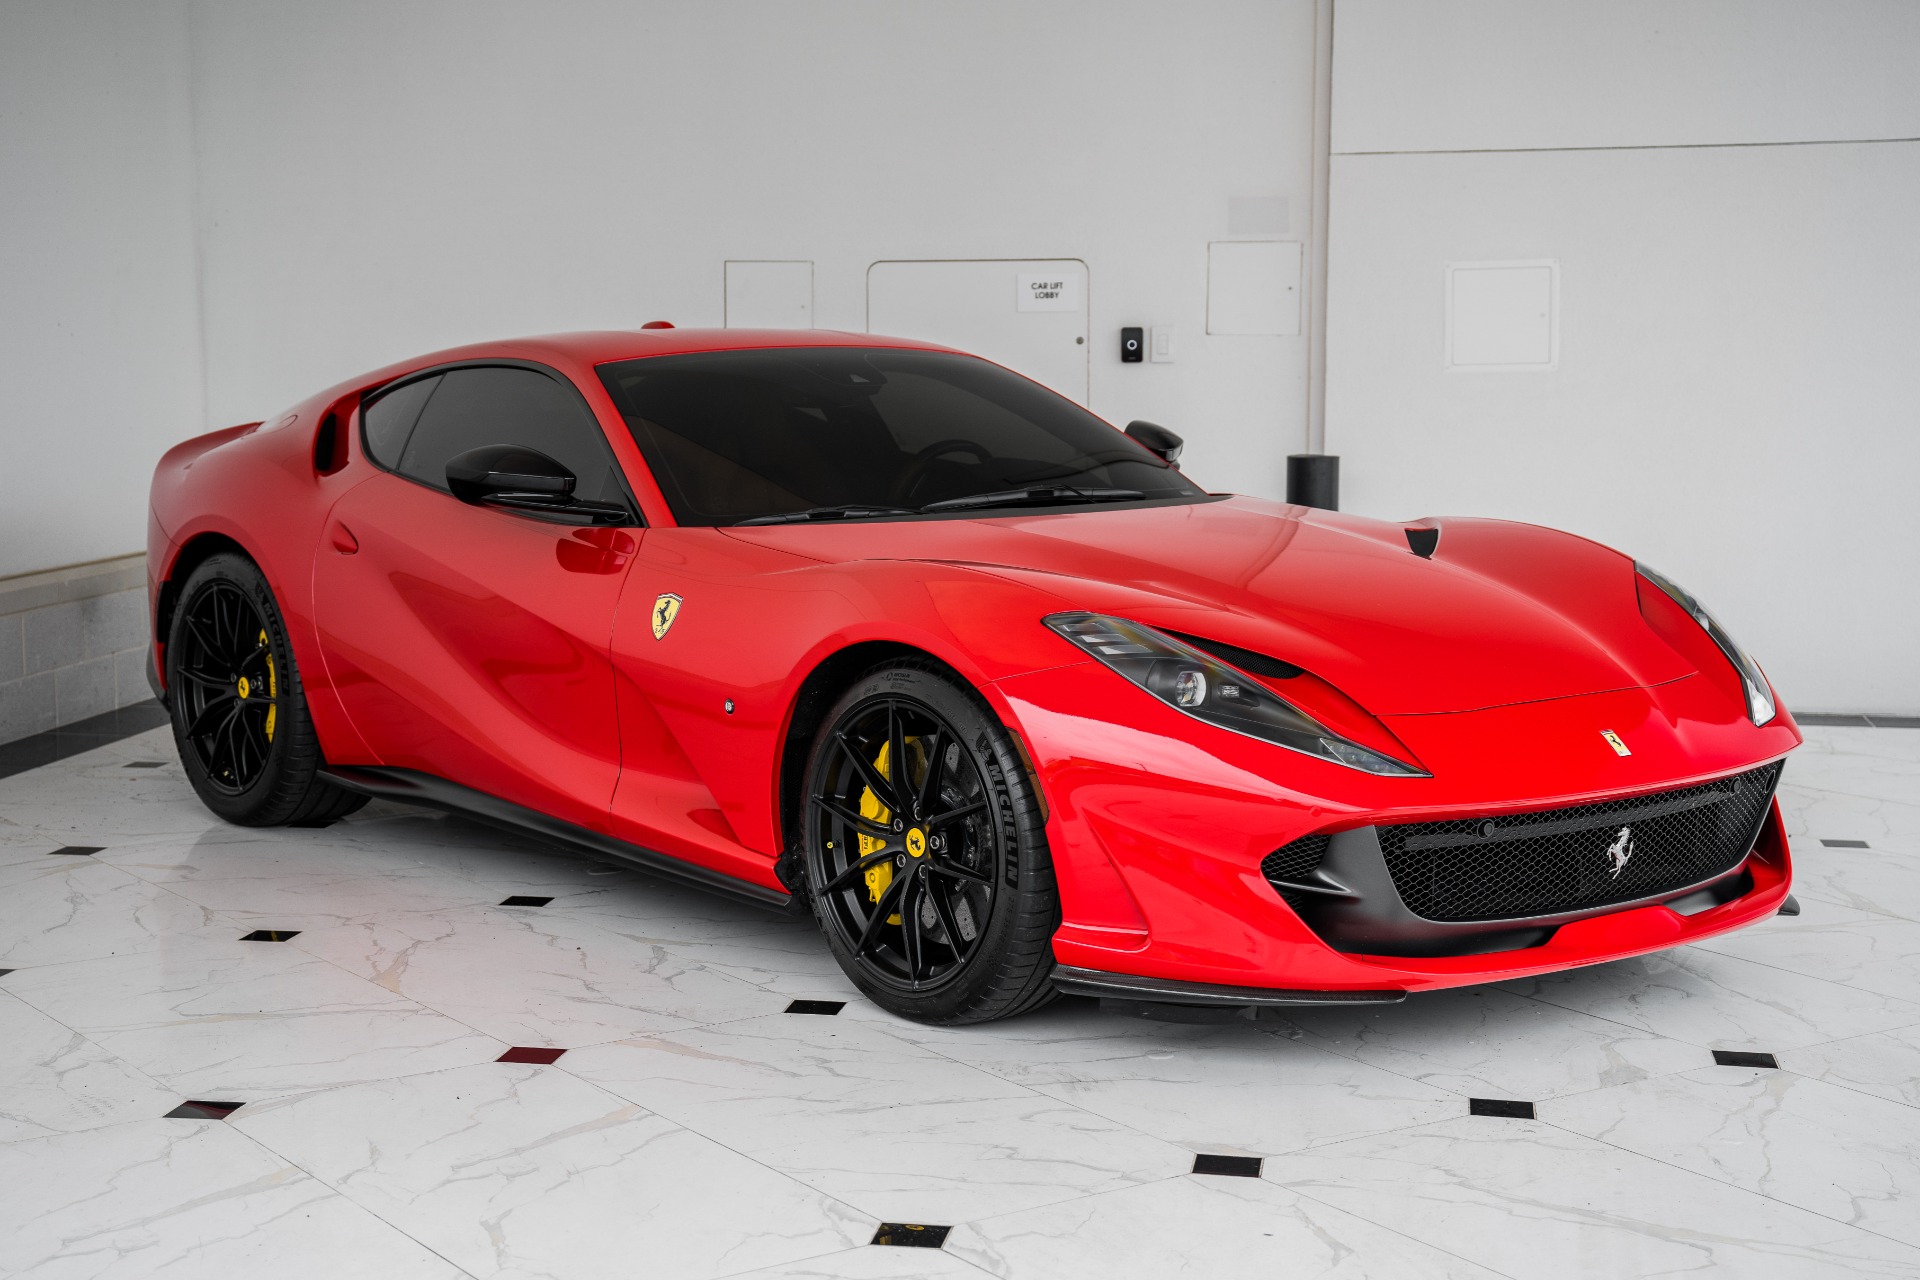 Official Ferrari Sticker Set: Buy Online on Offer